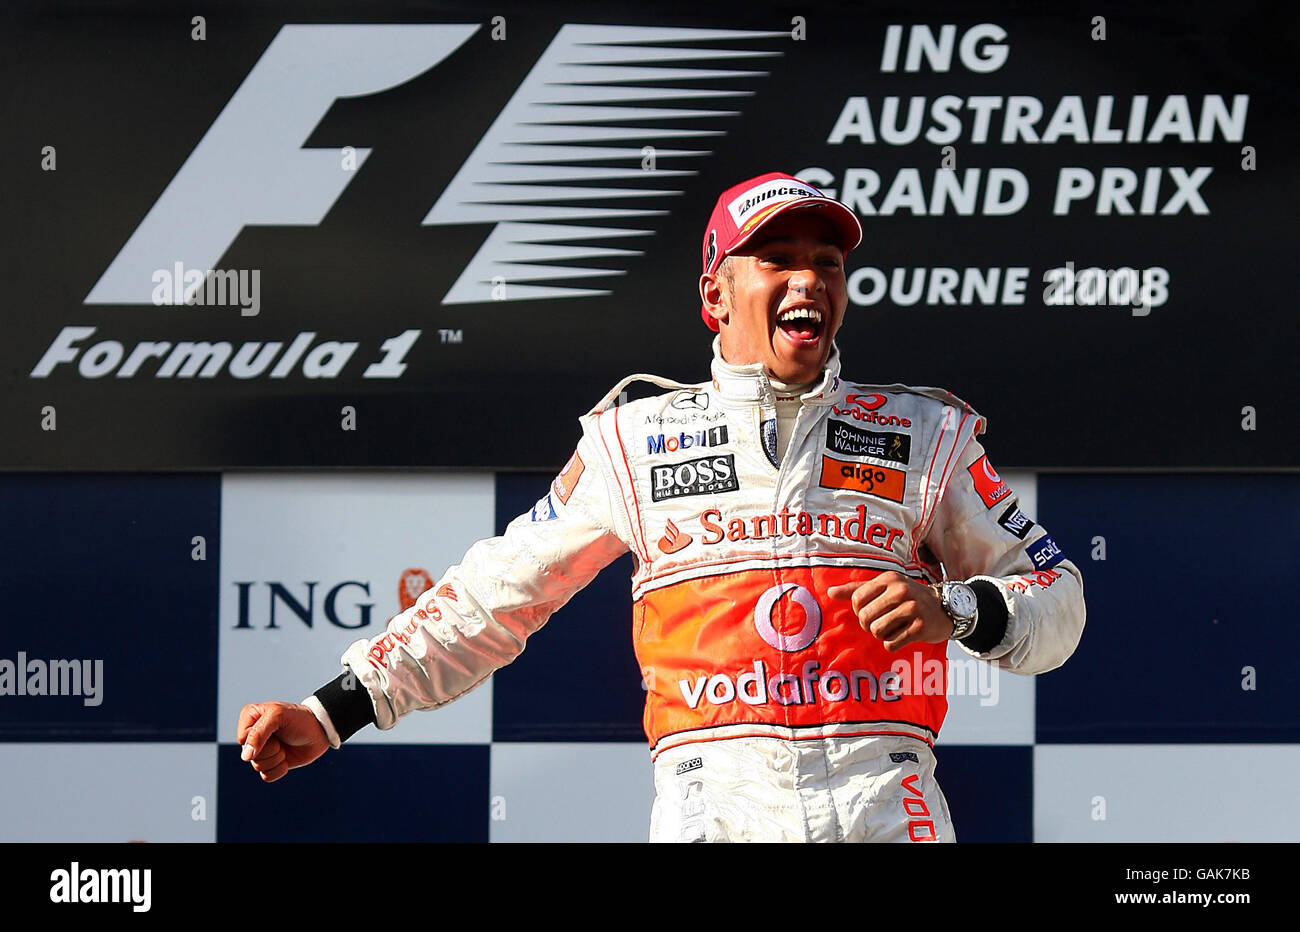 Formel-1-Autorennen - Großer Preis Von Australien - Rennen - Albert Park. Lewis Hamilton feiert seinen Sieg beim Formel 1, Australian, Grand Prix im Albert Park, Melbourne, Australien. Stockfoto